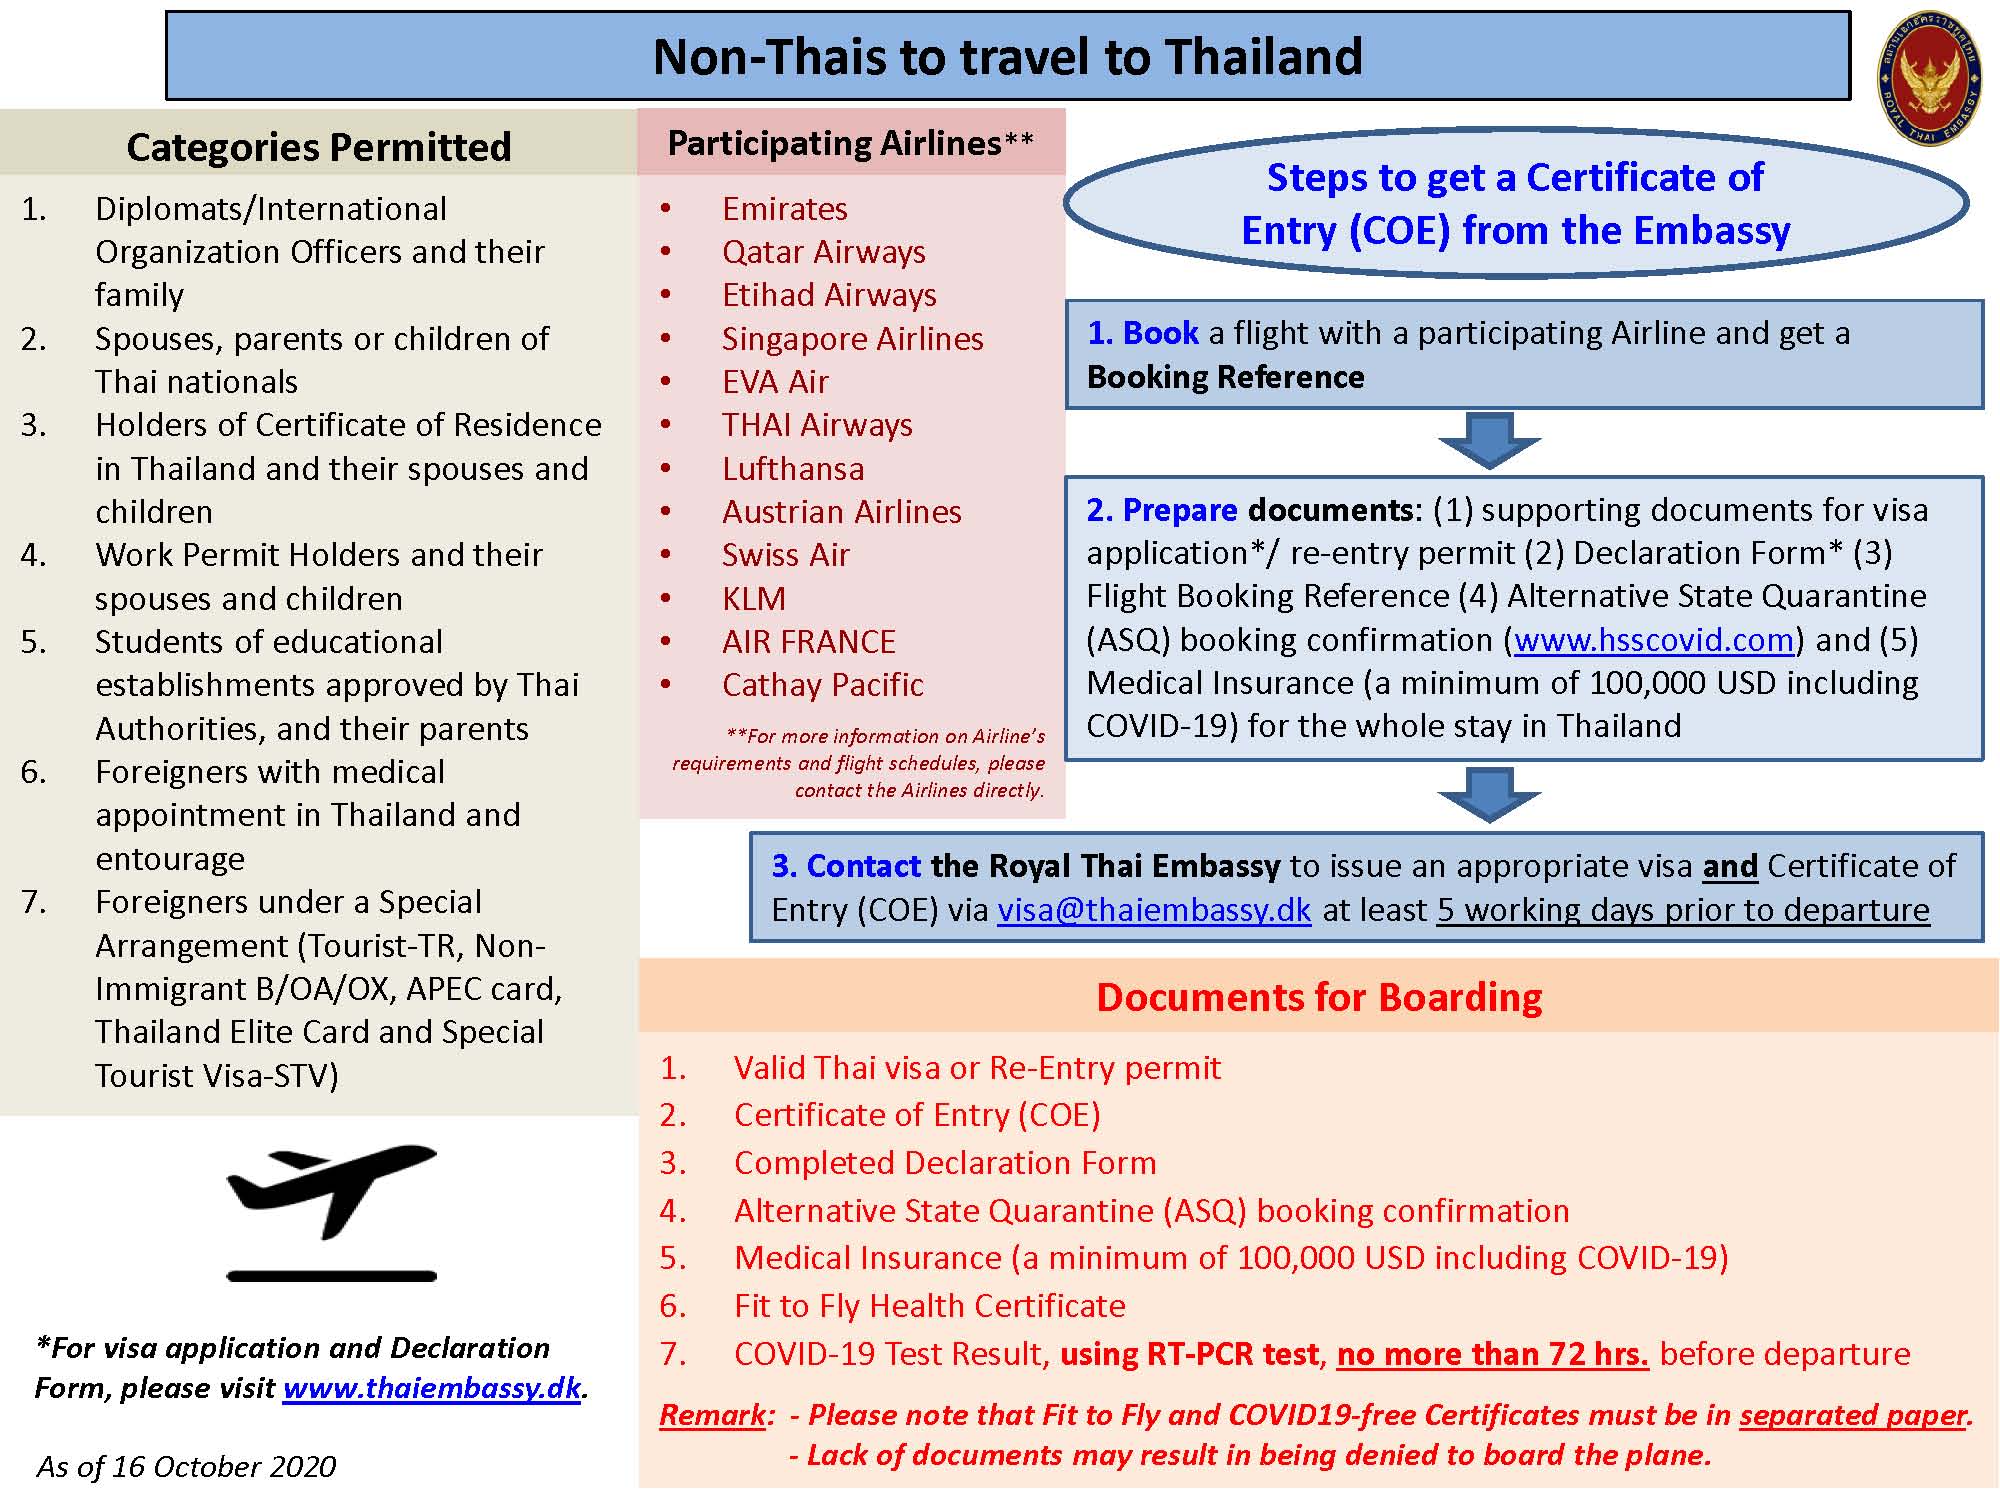 thaiguide.dk/images/forum/covid19/procedure-til-thailand-16-10-20.jpg